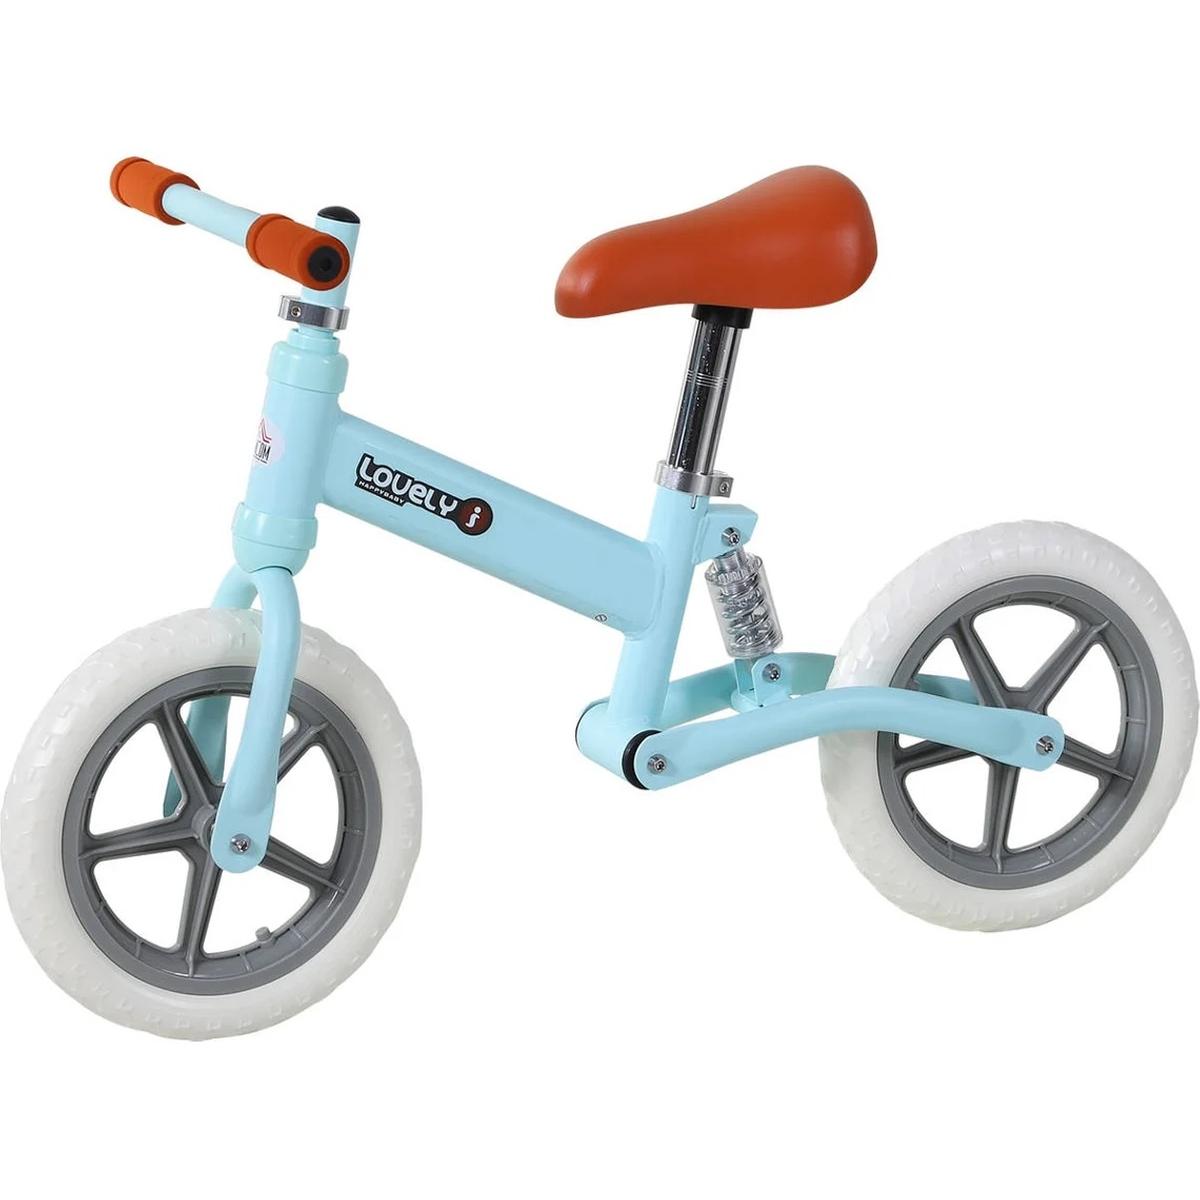 HOMCOM Bicicleta sin Pedales para Niños de 1-3 Años Bicicleta de